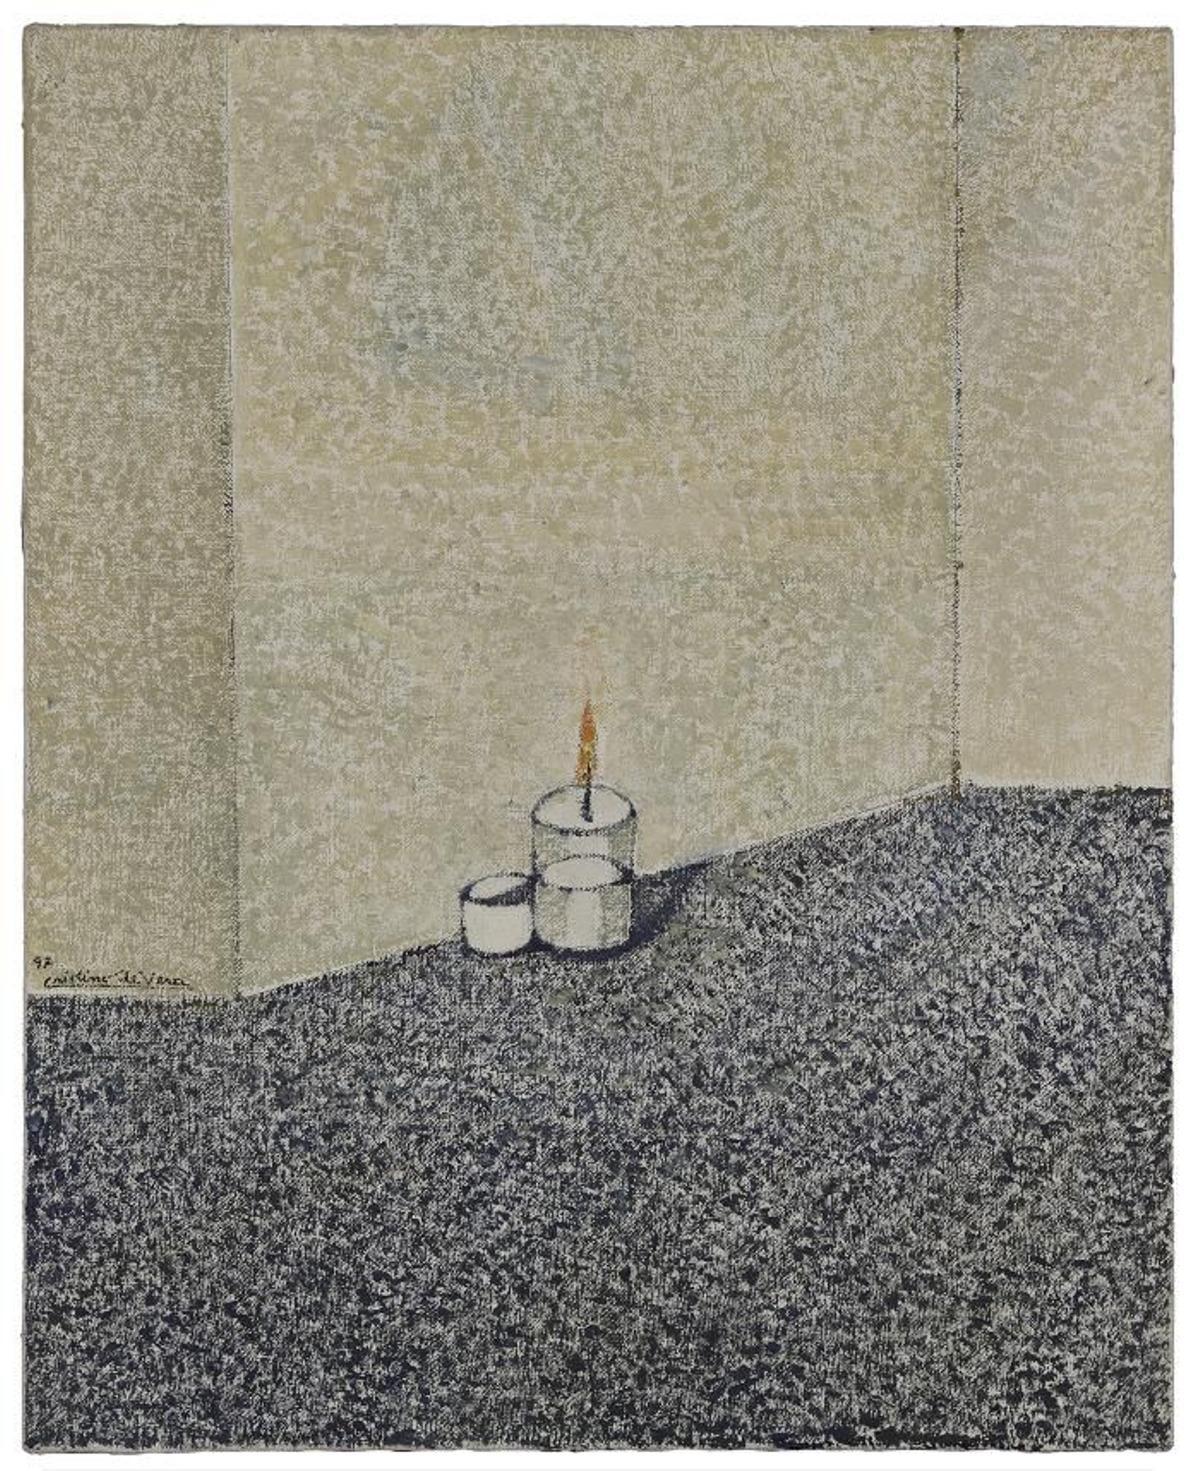 'Muros y dos objetos blancos', de Cristino de Vera (1997).